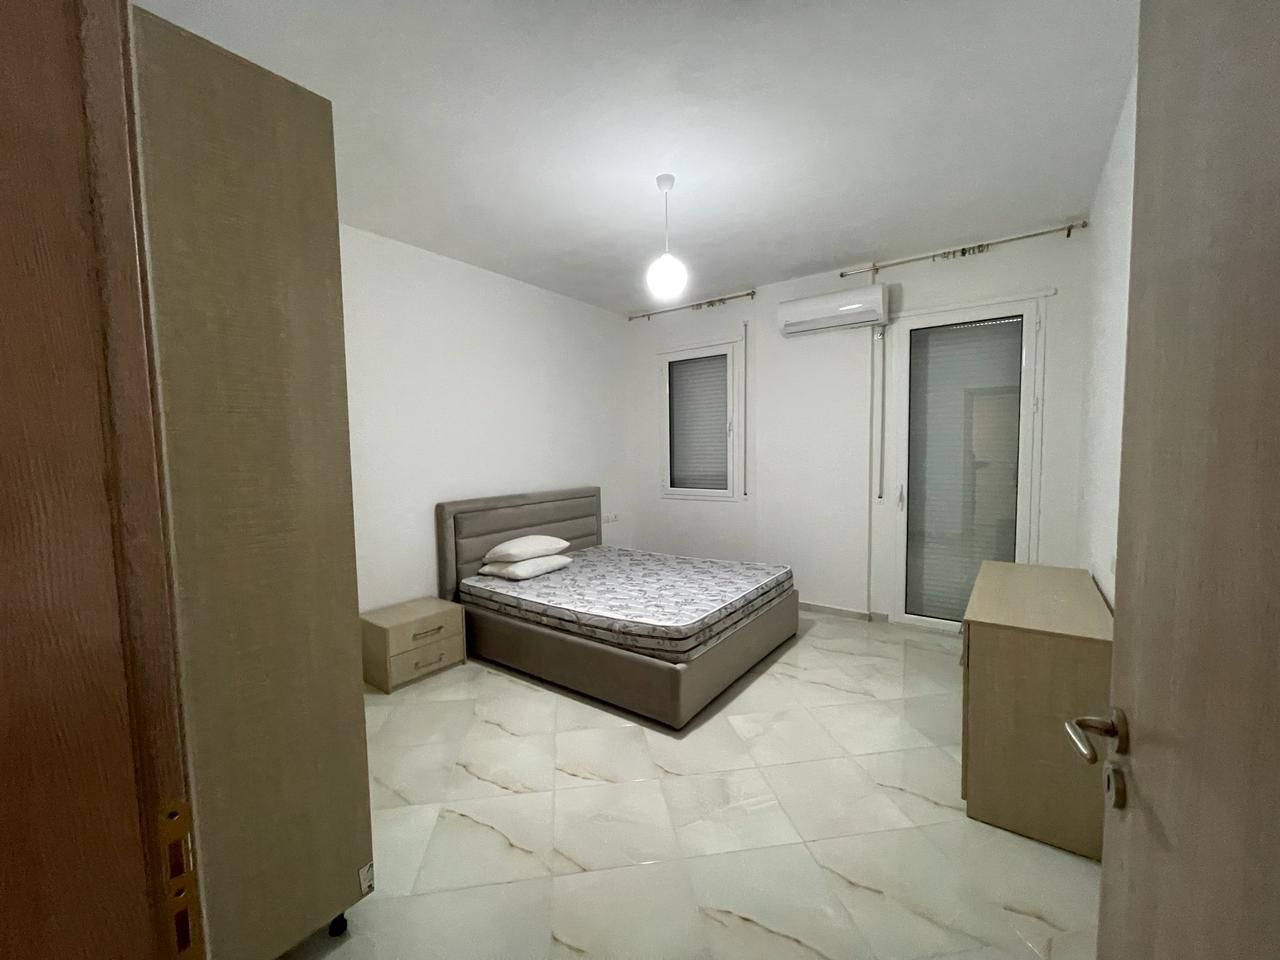 Apartament Per Shitje Ne Vlore Shqiperi, I Pozicionuar Ne Nje Zone Te Mire, Prane plazhit